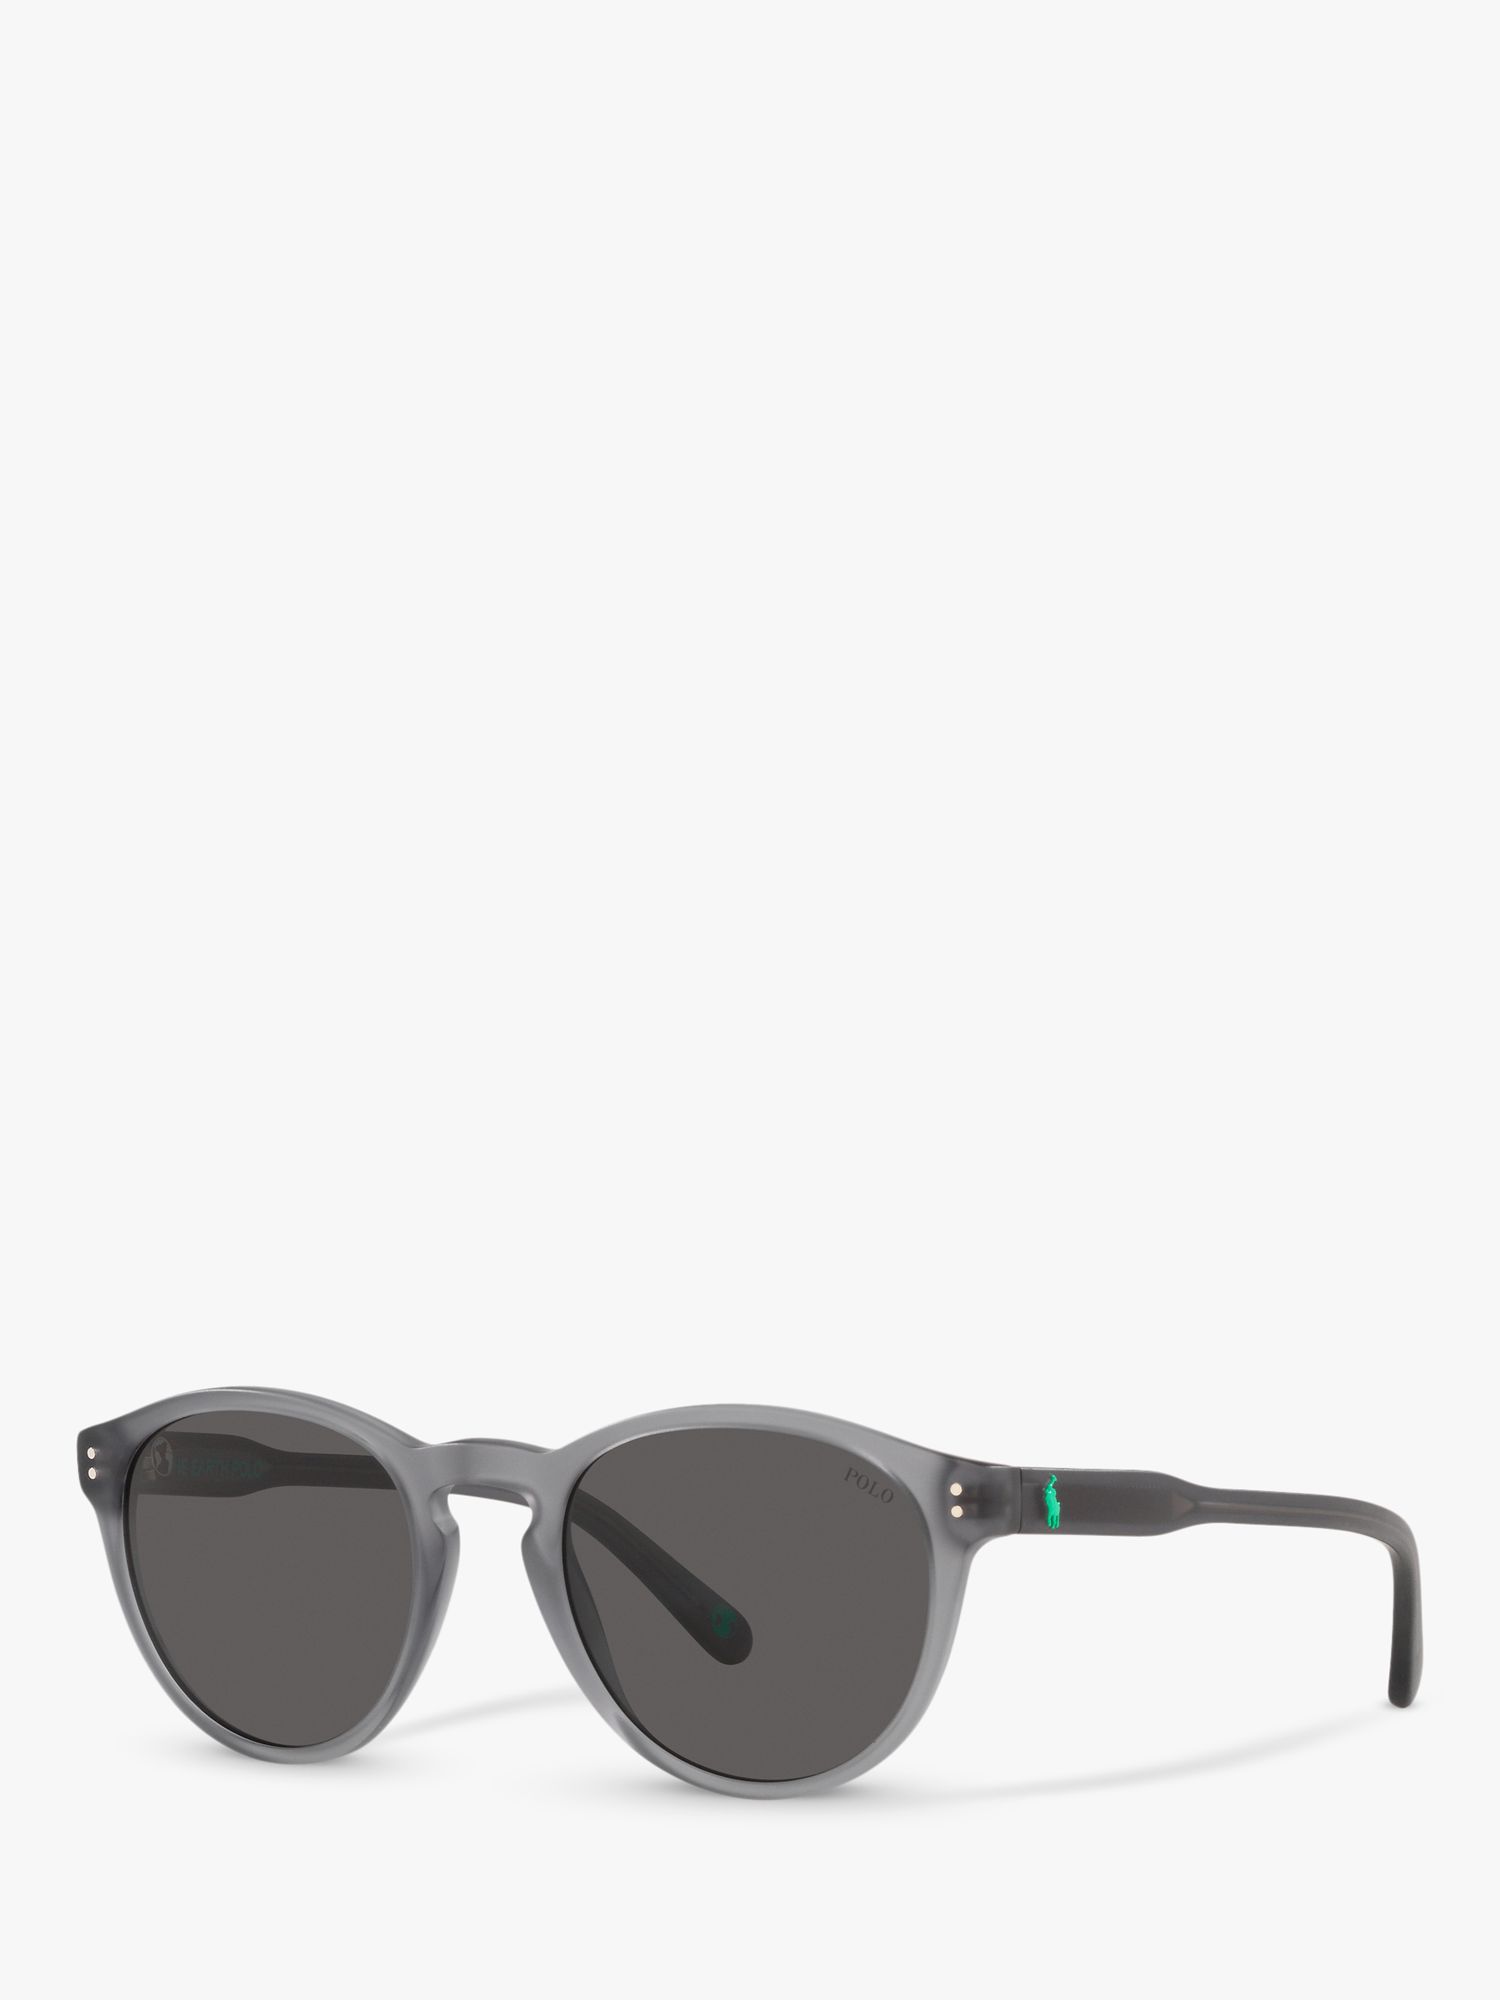 Мужские овальные солнцезащитные очки Ralph Lauren PH4172, серые мужские солнцезащитные очки ph4172 50 polo ralph lauren